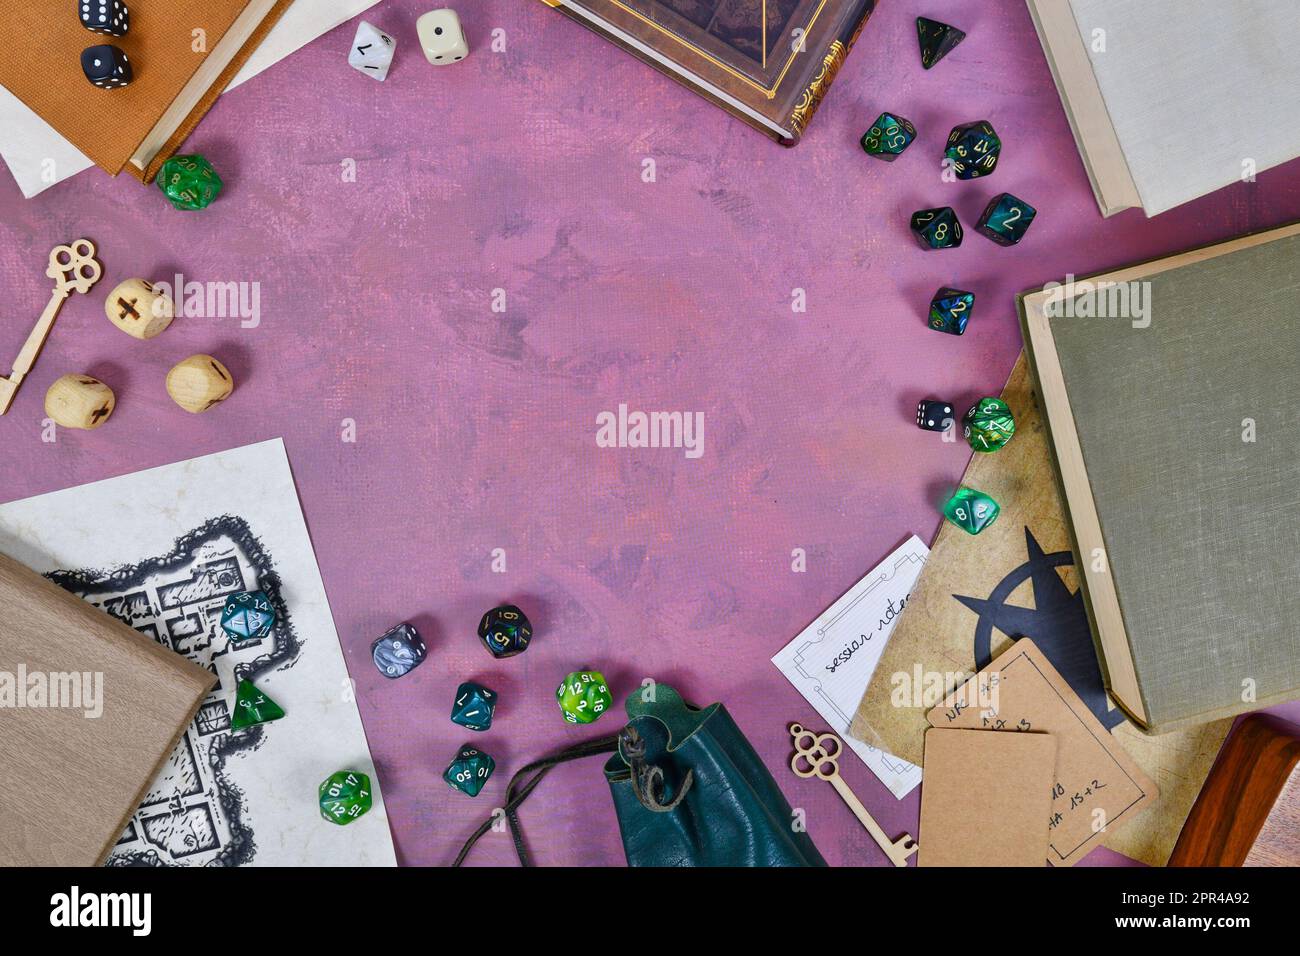 Tischrollenspiel flach liegender Hintergrund mit bunten Rollenwürfeln, Regelbüchern, Kerkerkerkarte Stockfoto